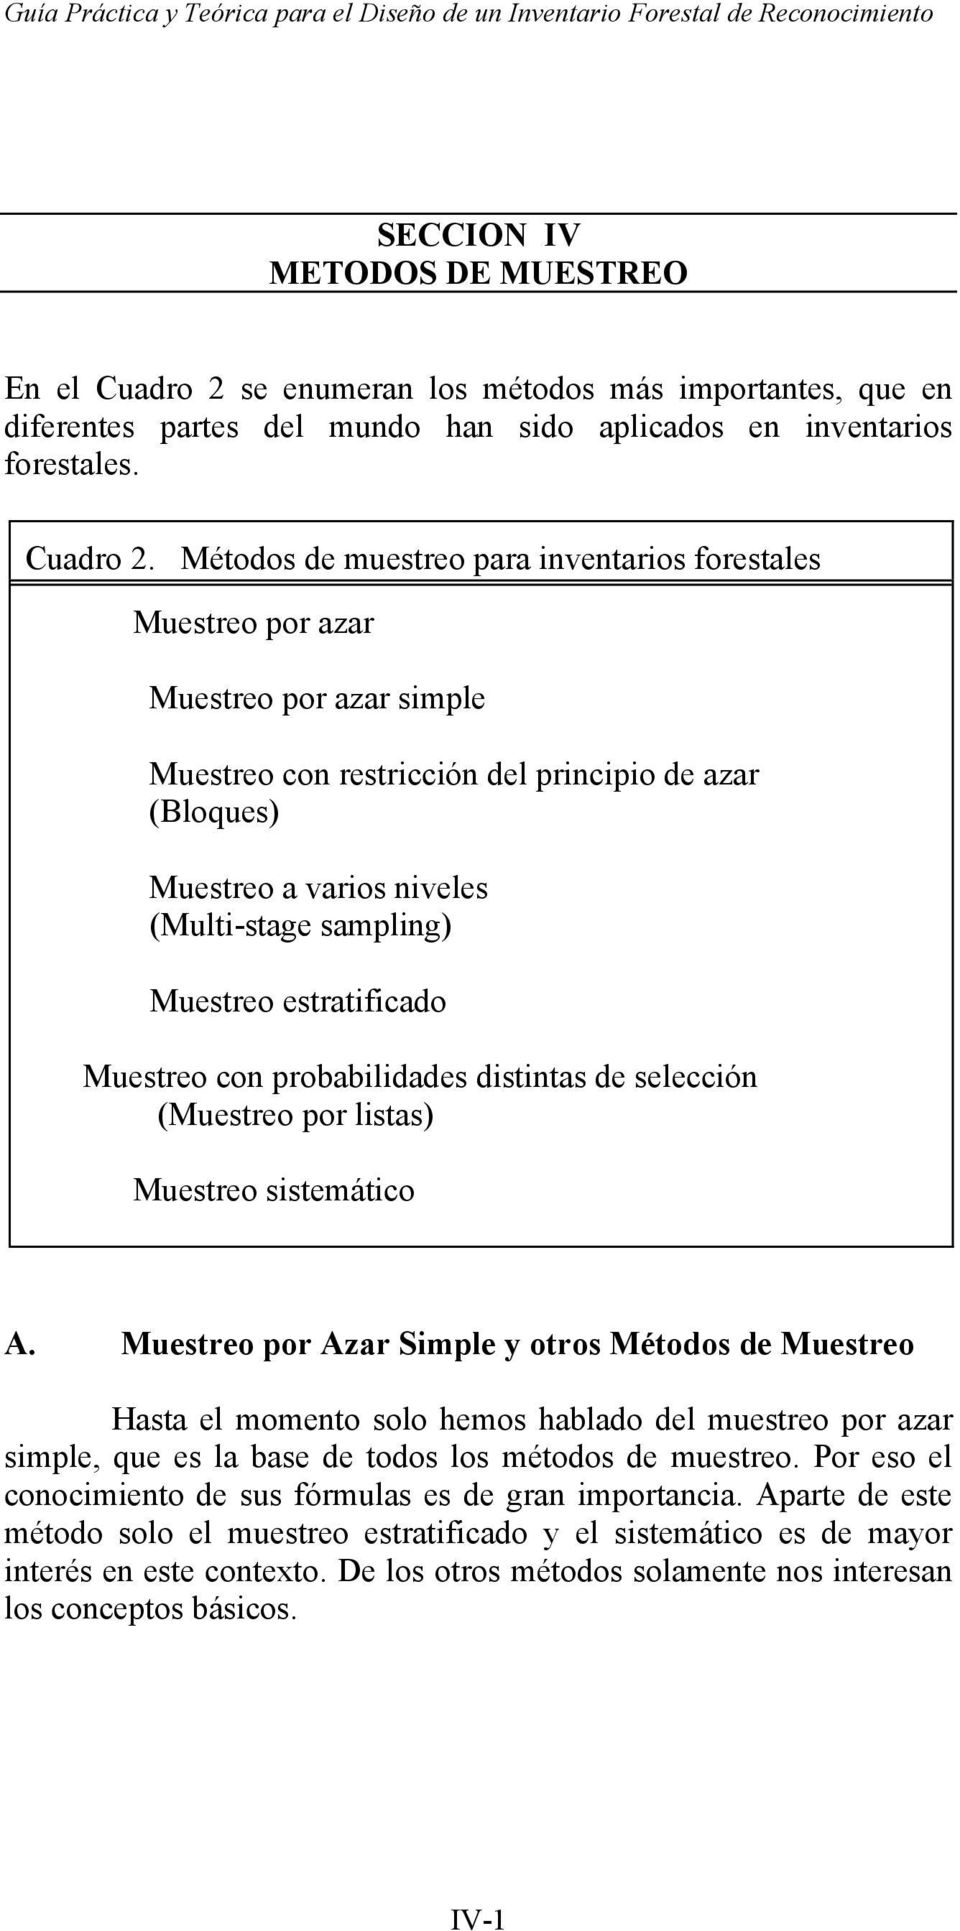 Métodos de muestreo para inventarios forestales Muestreo por azar Muestreo por azar simple Muestreo con restricción del principio de azar (Bloques) Muestreo a varios niveles (Multi-stage sampling)